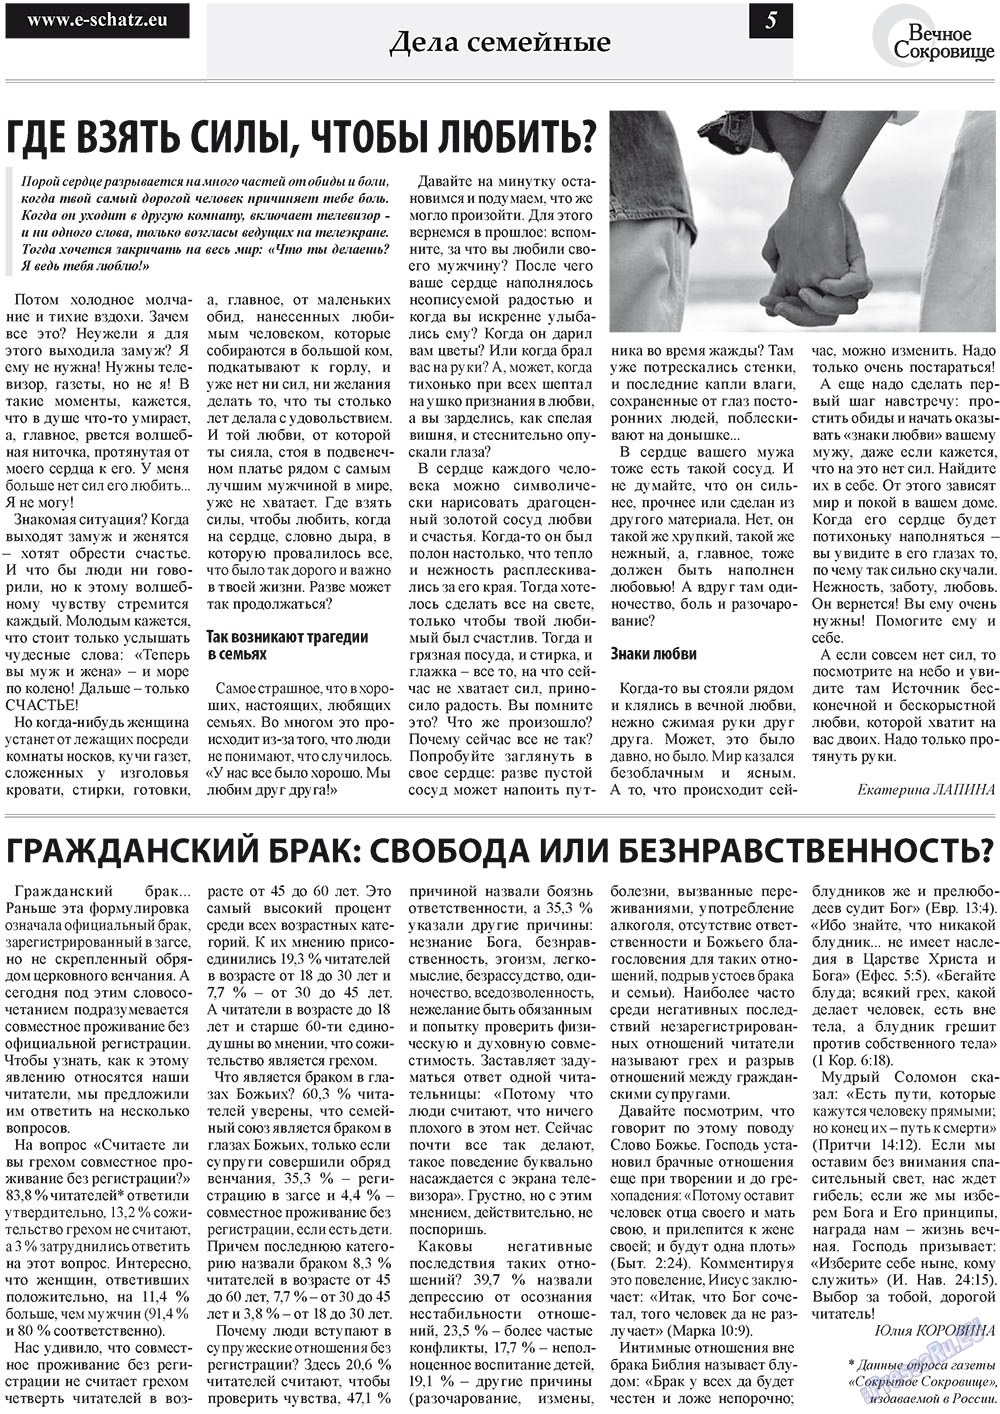 Вечное сокровище, газета. 2011 №5 стр.5